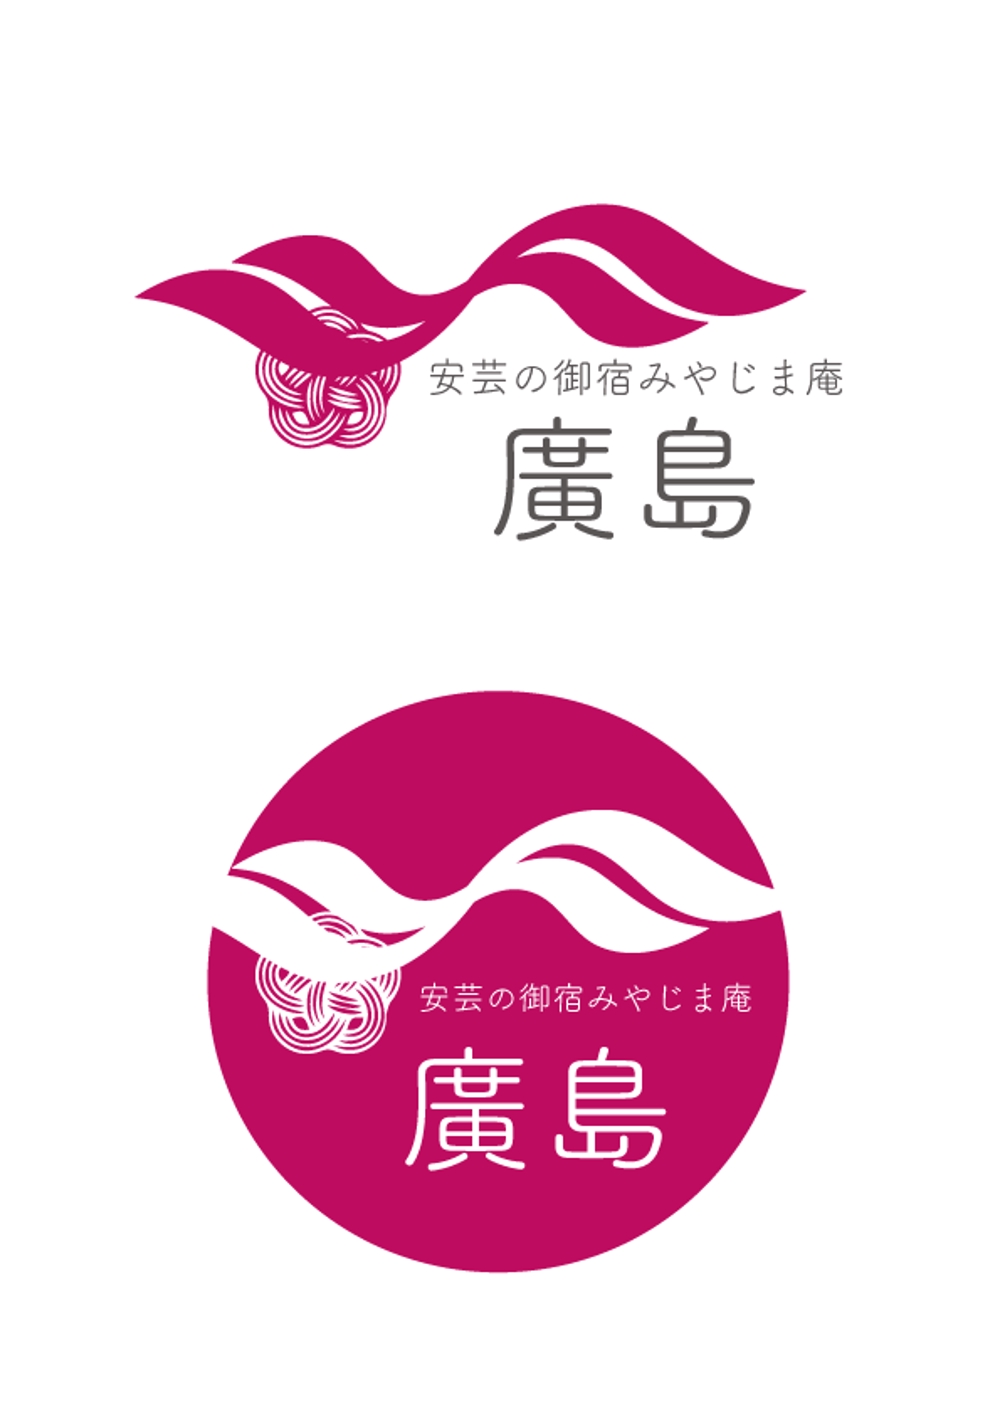 旅館、「安芸の御宿みやじま庵廣島」のロゴ